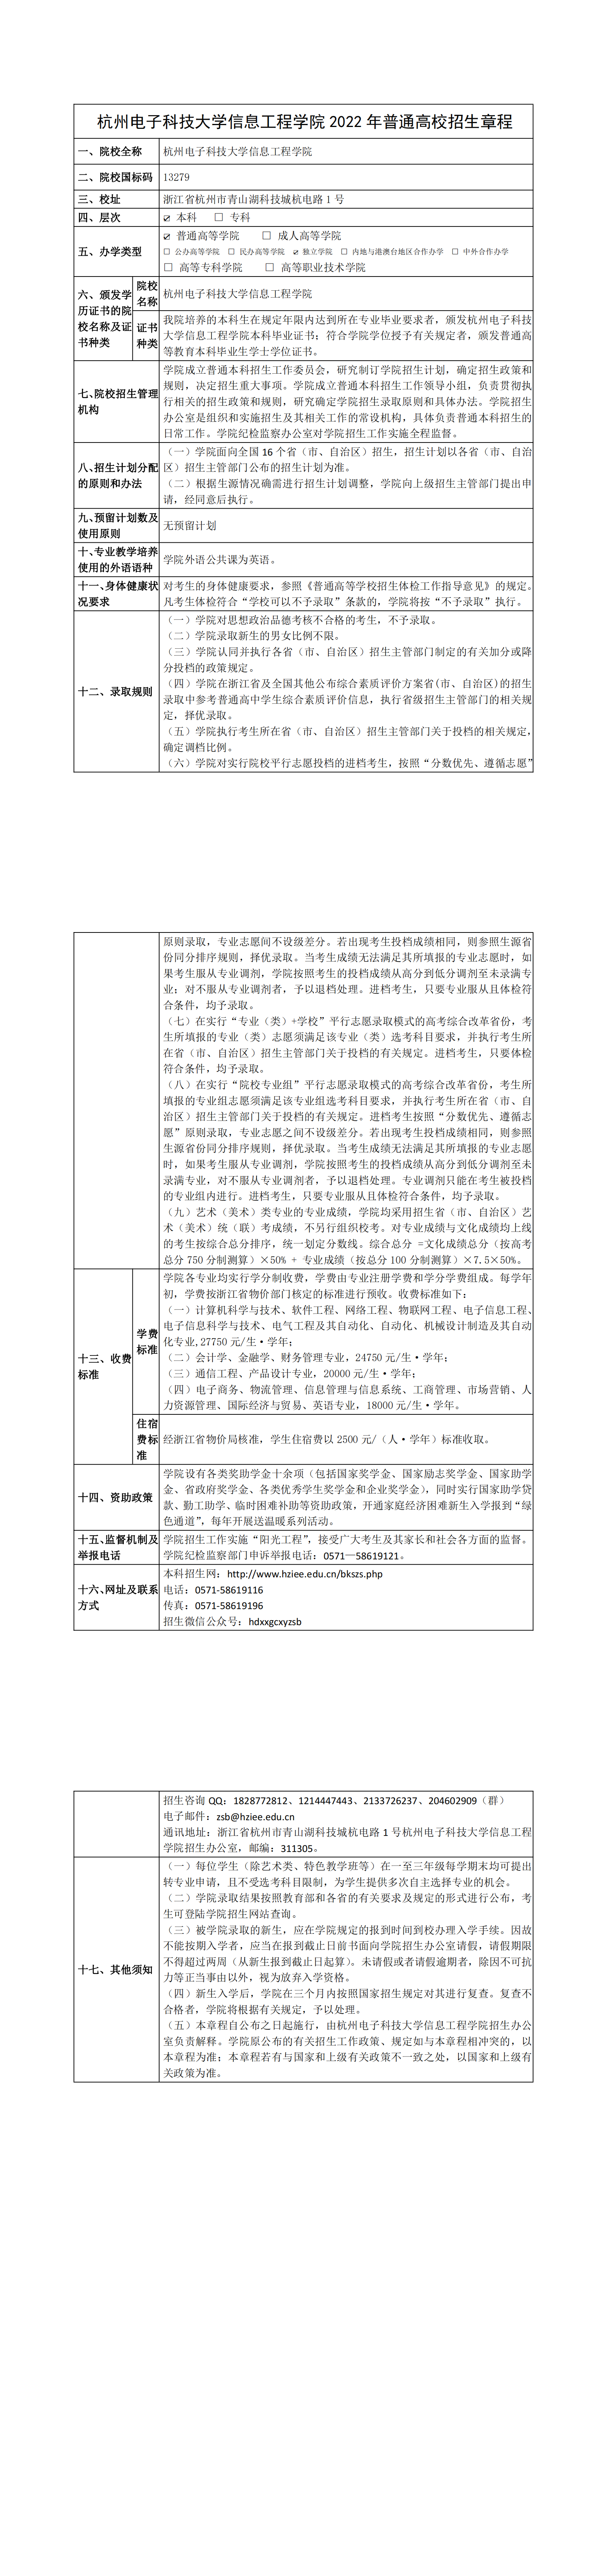 澳门尼威斯人(中国)科技有限公司2022年普通高校招生章程（定稿）(1)_00.png